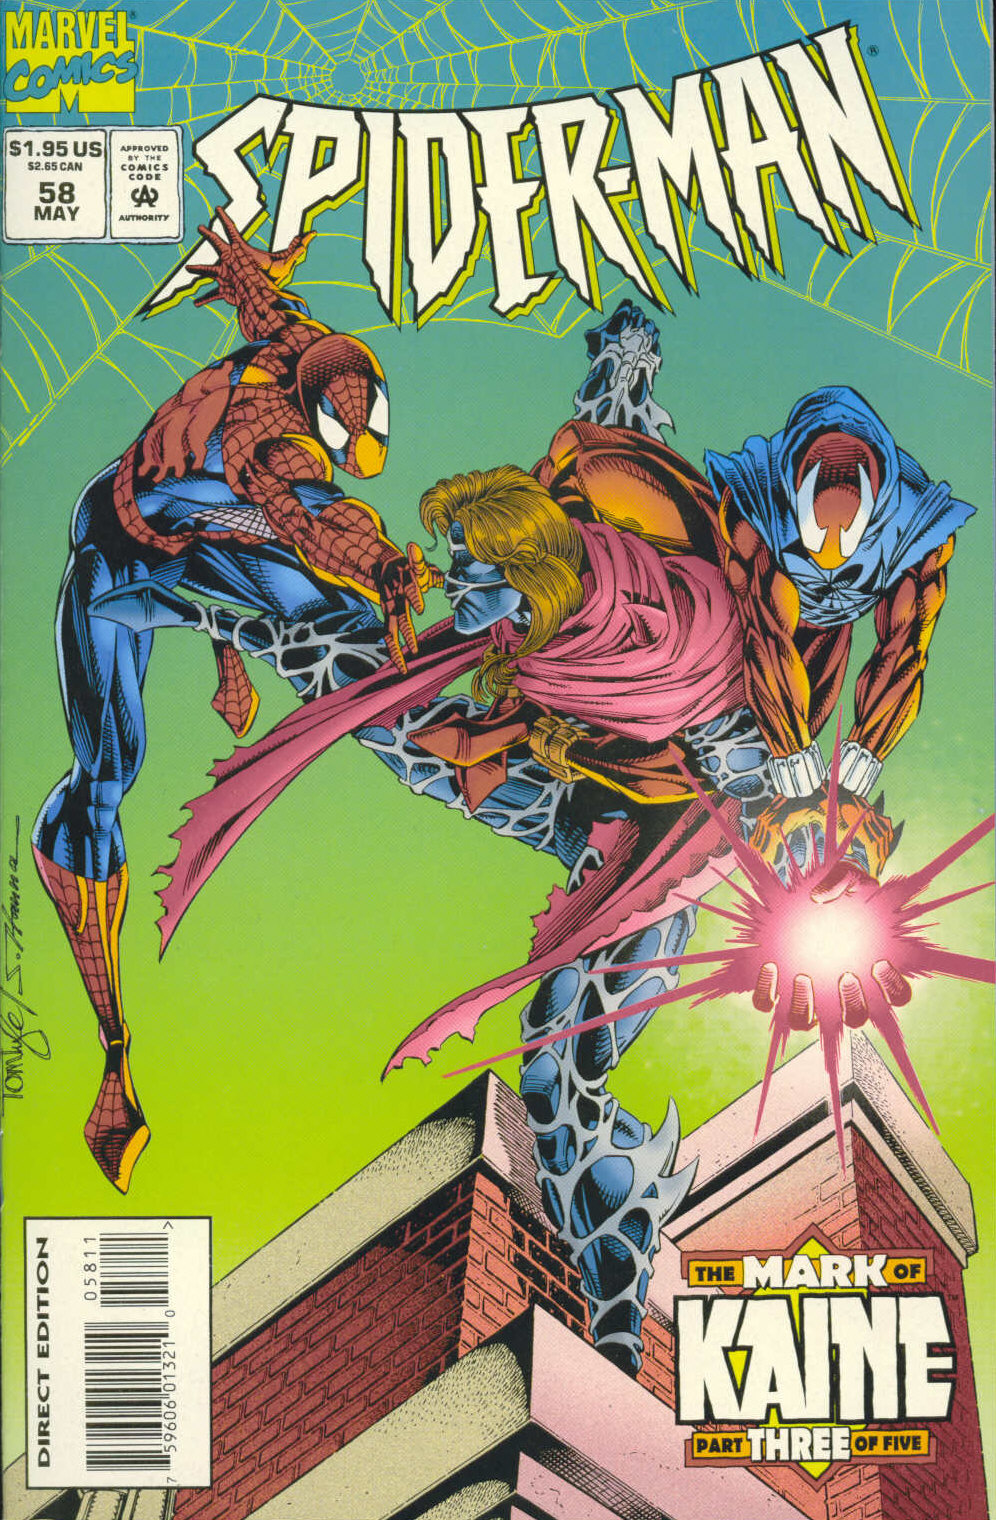 Spider-Man (1990) issue 58 - Spider, Spider, Who's Got The Spider - Page 1